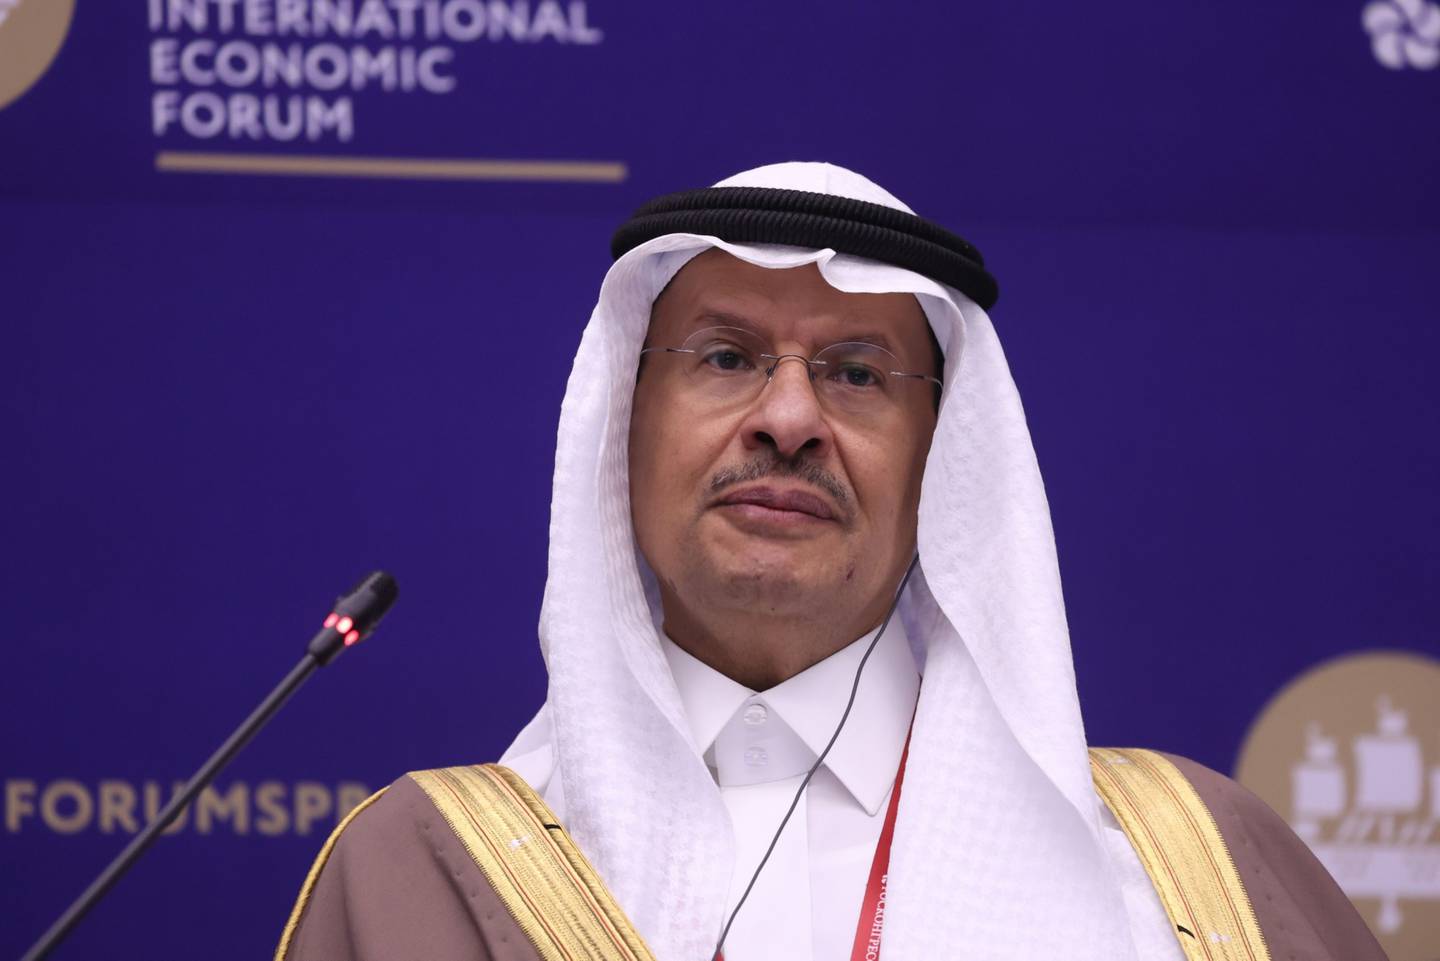 Abdulaziz bin Salman, ministro de energía de Arabia Saudita, en el Foro Económico Internacional de San Petersburgo (SPIEF), Rusia, el jueves 3 de junio de 2021.